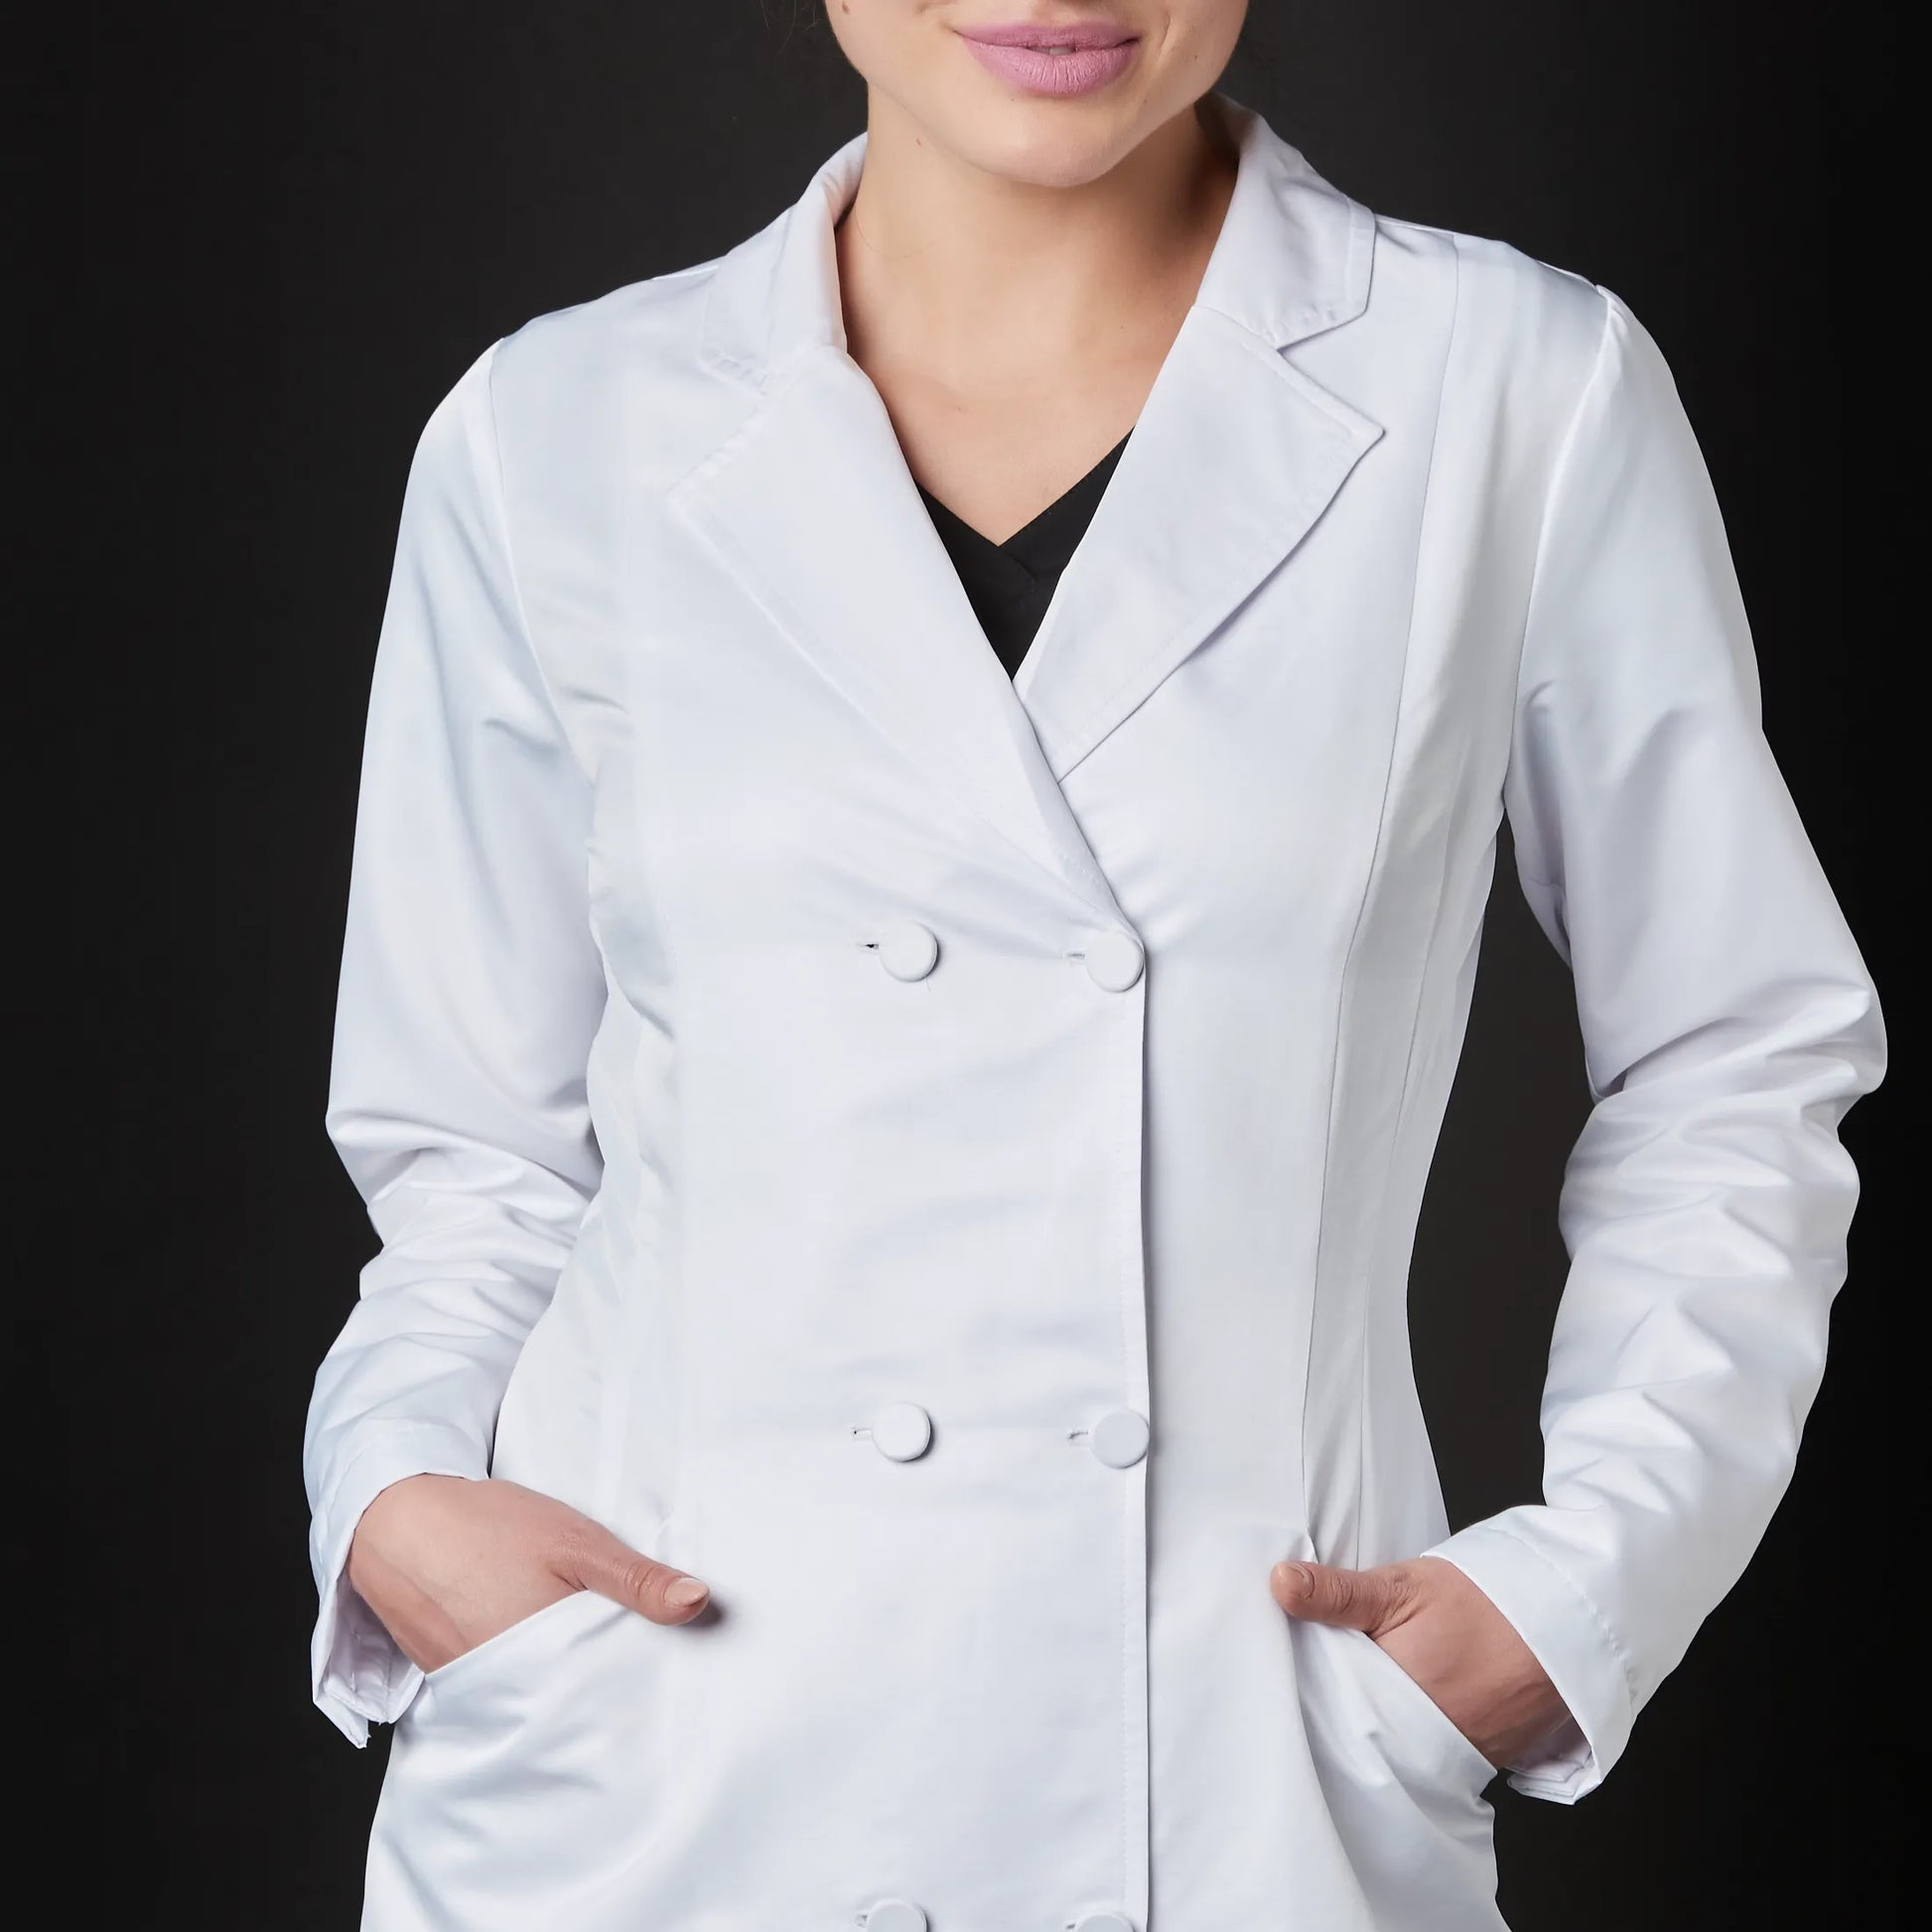 Médico o Doctor vistiendo una  color Blanco marca Gallantdale Uniformes Médicos y Quirúrgicos